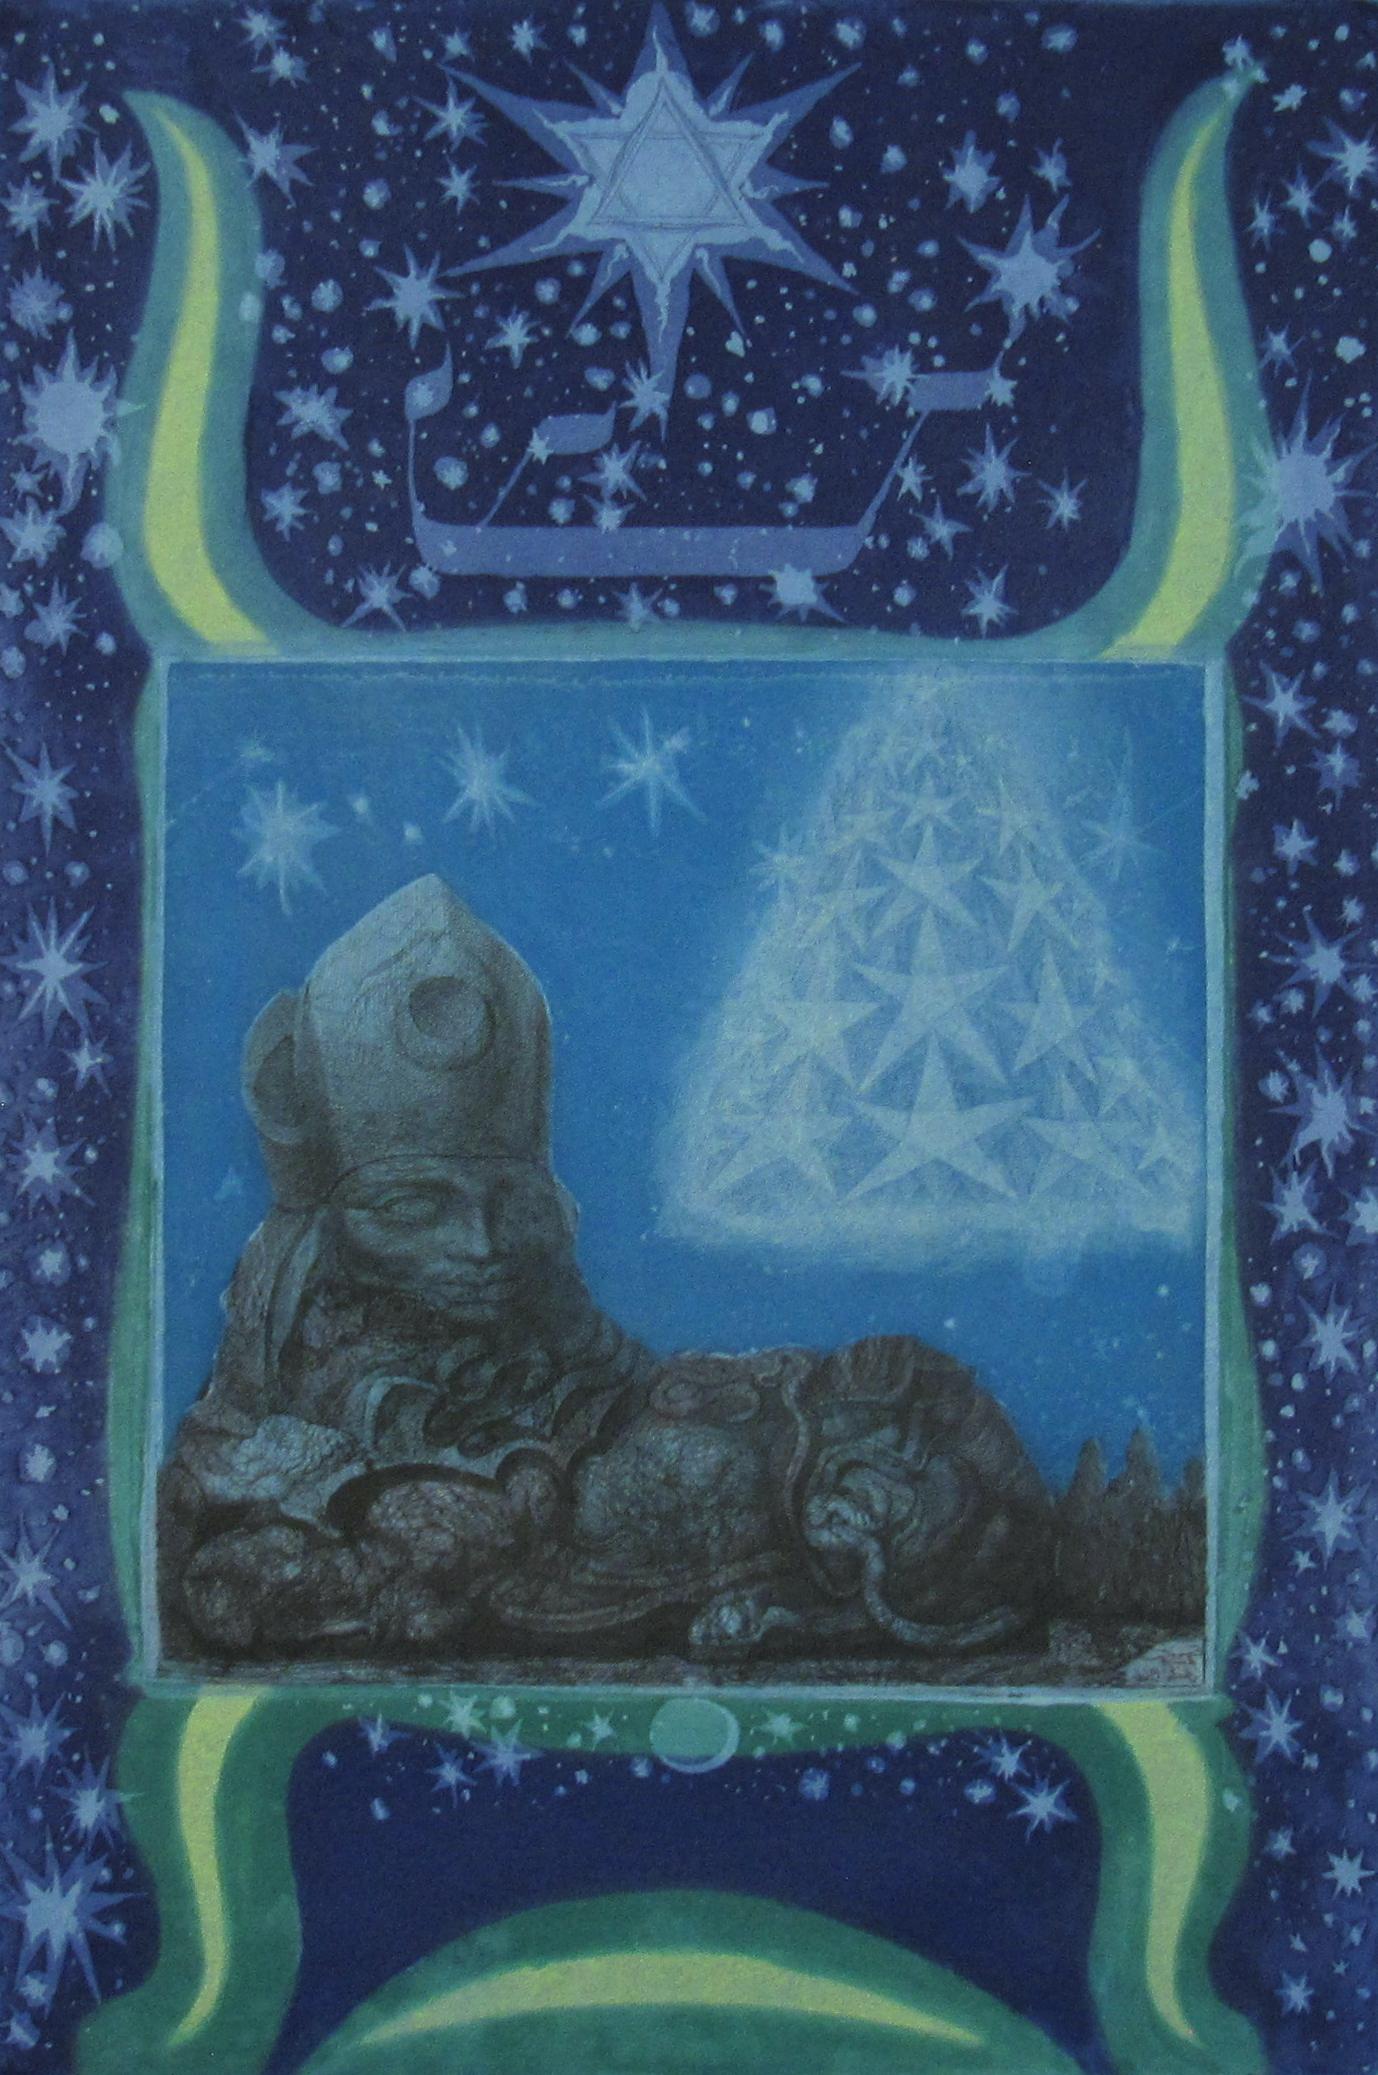 Ernst Fuchs
(Austrian, 1930 - 2015)

The Sphinx Mystagogo

Sheet Nr. 6 from the Folio “Die Sieben Bilder und Sprüche der Sphinx”, published in Autumn of 1967 by Galerie Sydow in Frankfurt, Germany.

•	Aquatint Etching
•	Ed. 79/99
•	Sheet ca. 59 x